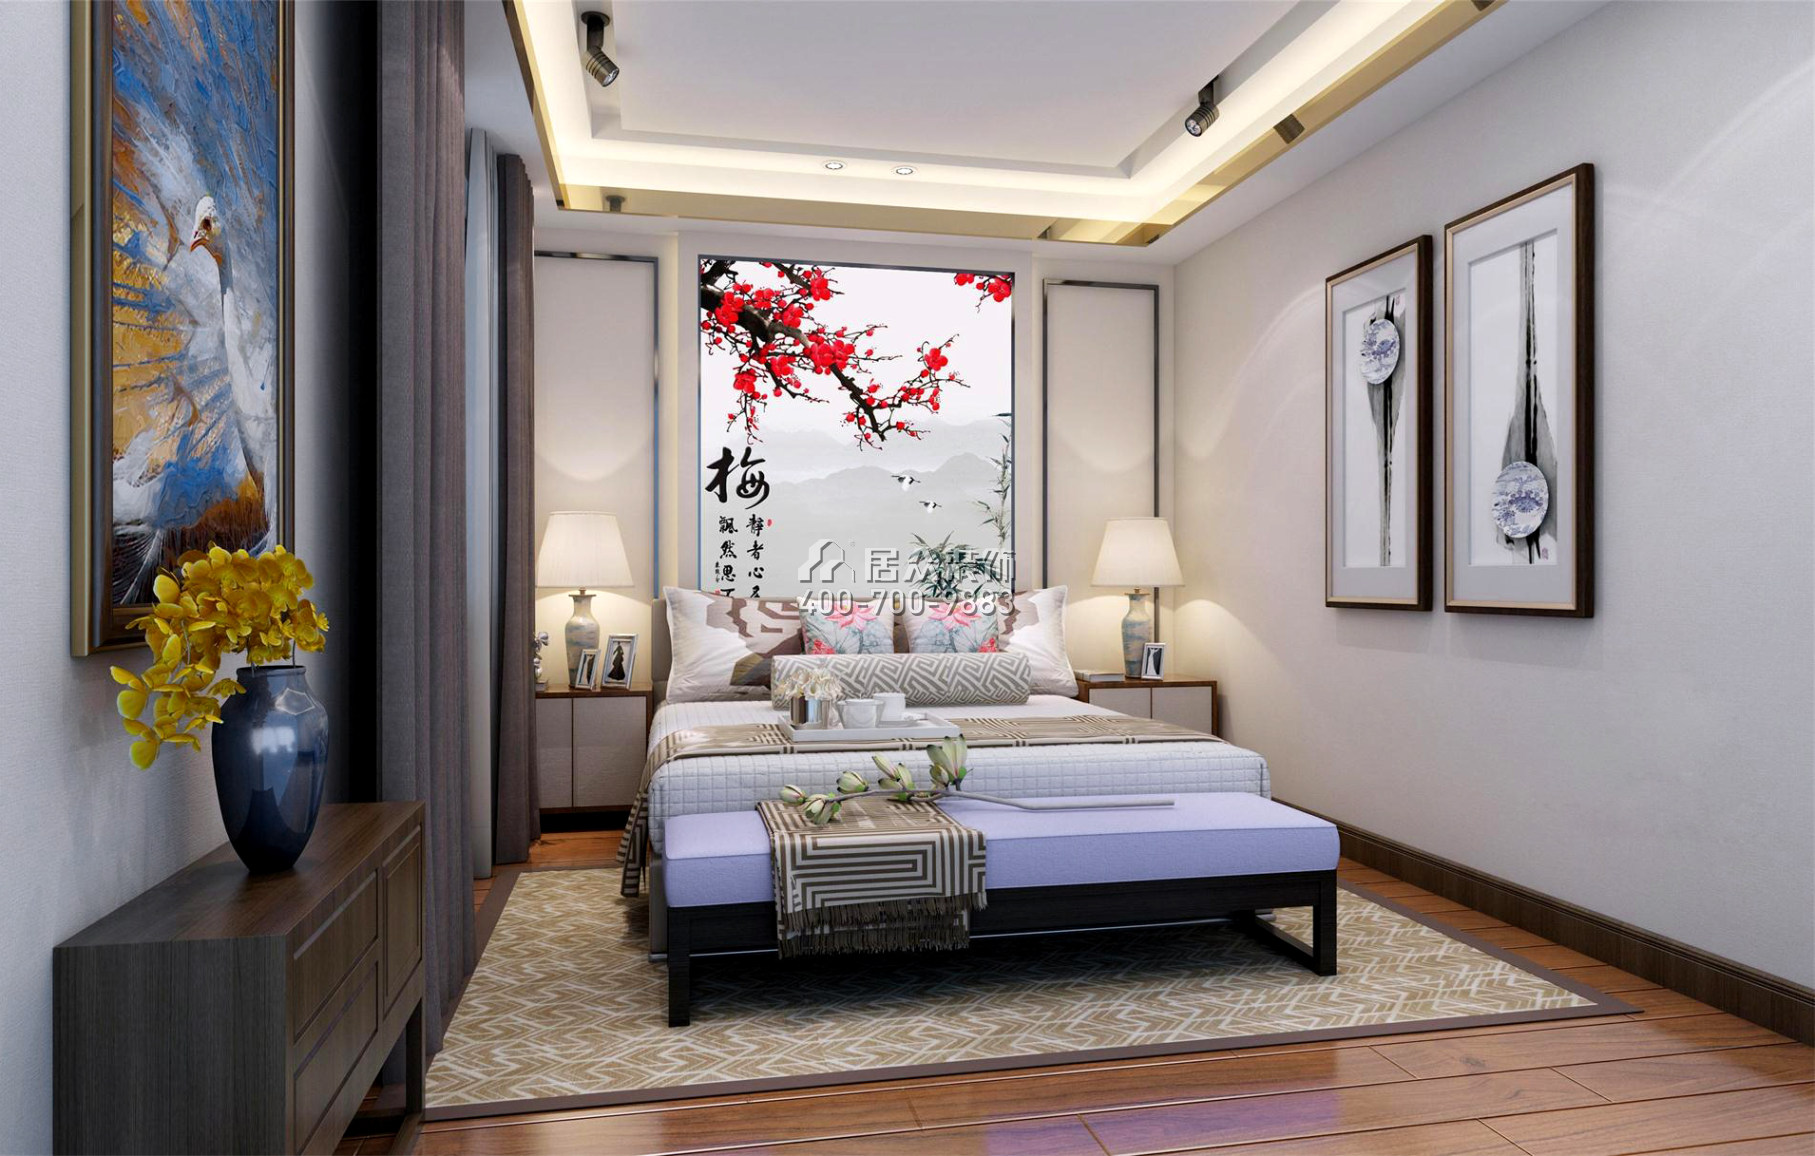 枫丹雅苑145平方米中式风格平层户型卧室装修效果图